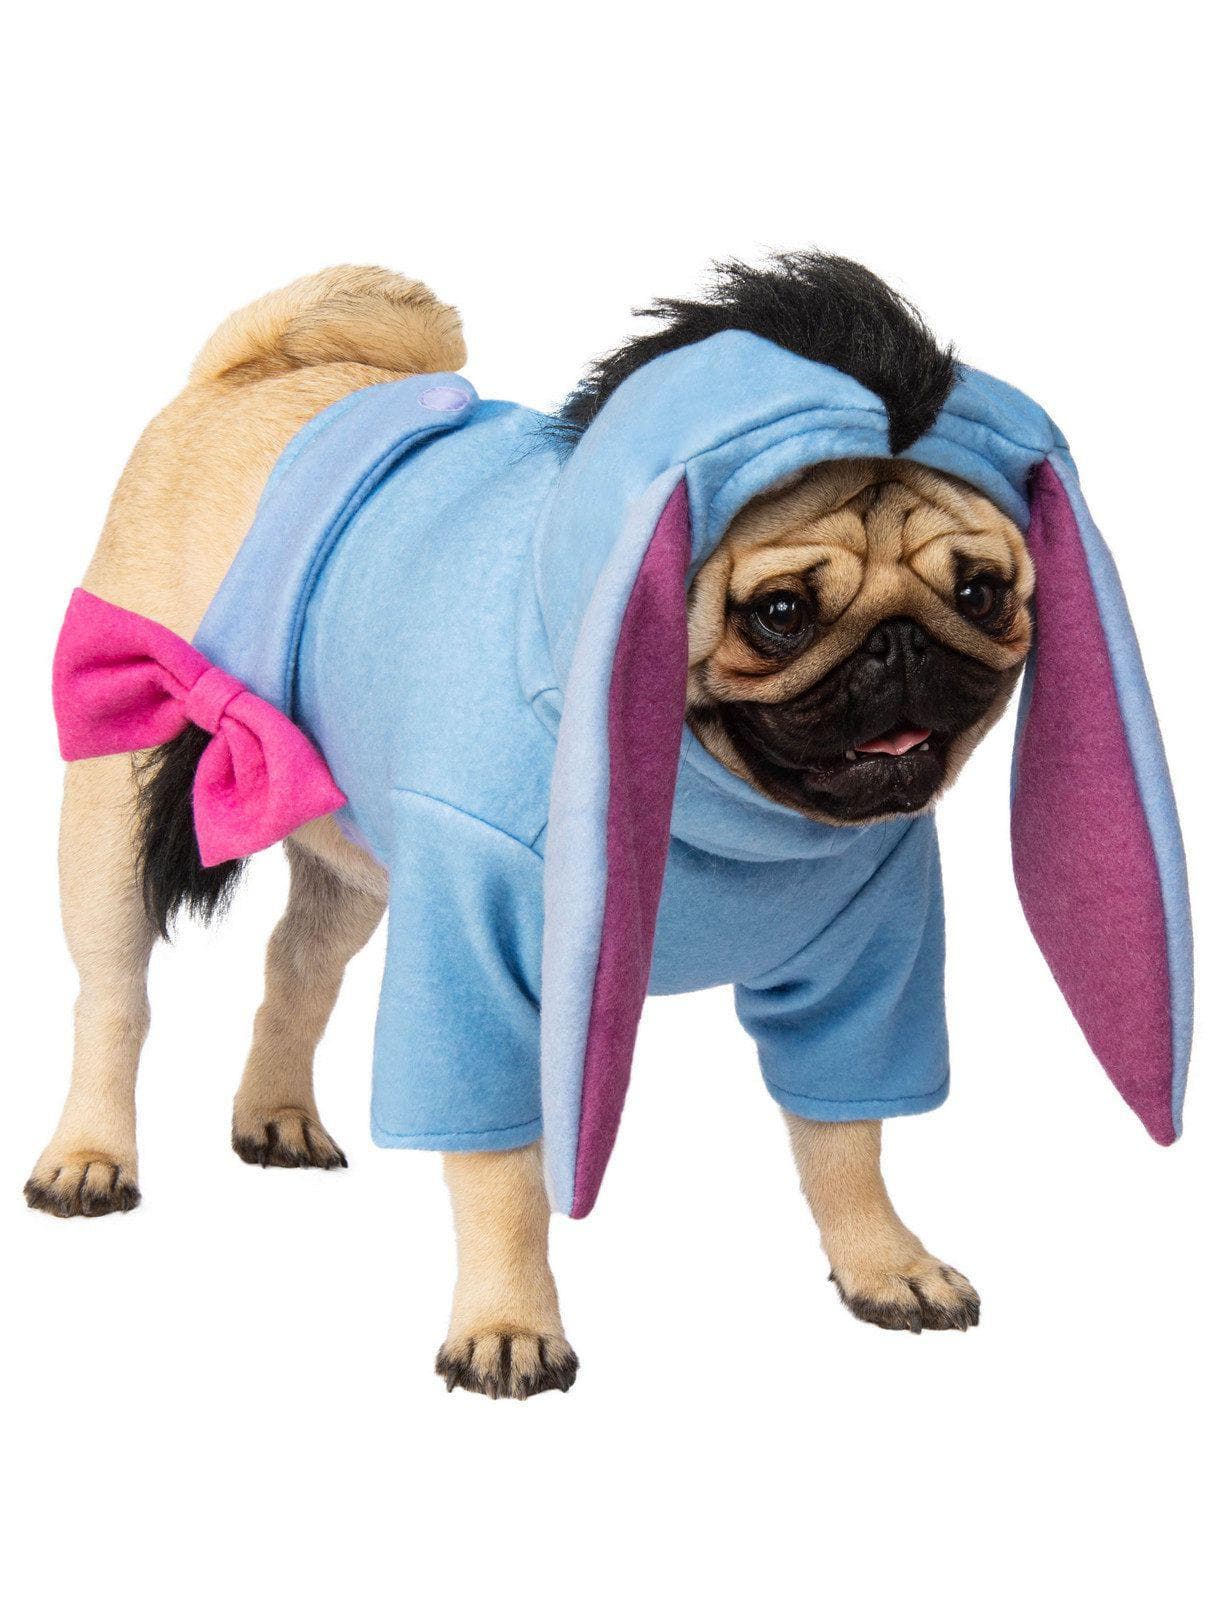 Eeyore Pet Costume - costumes.com